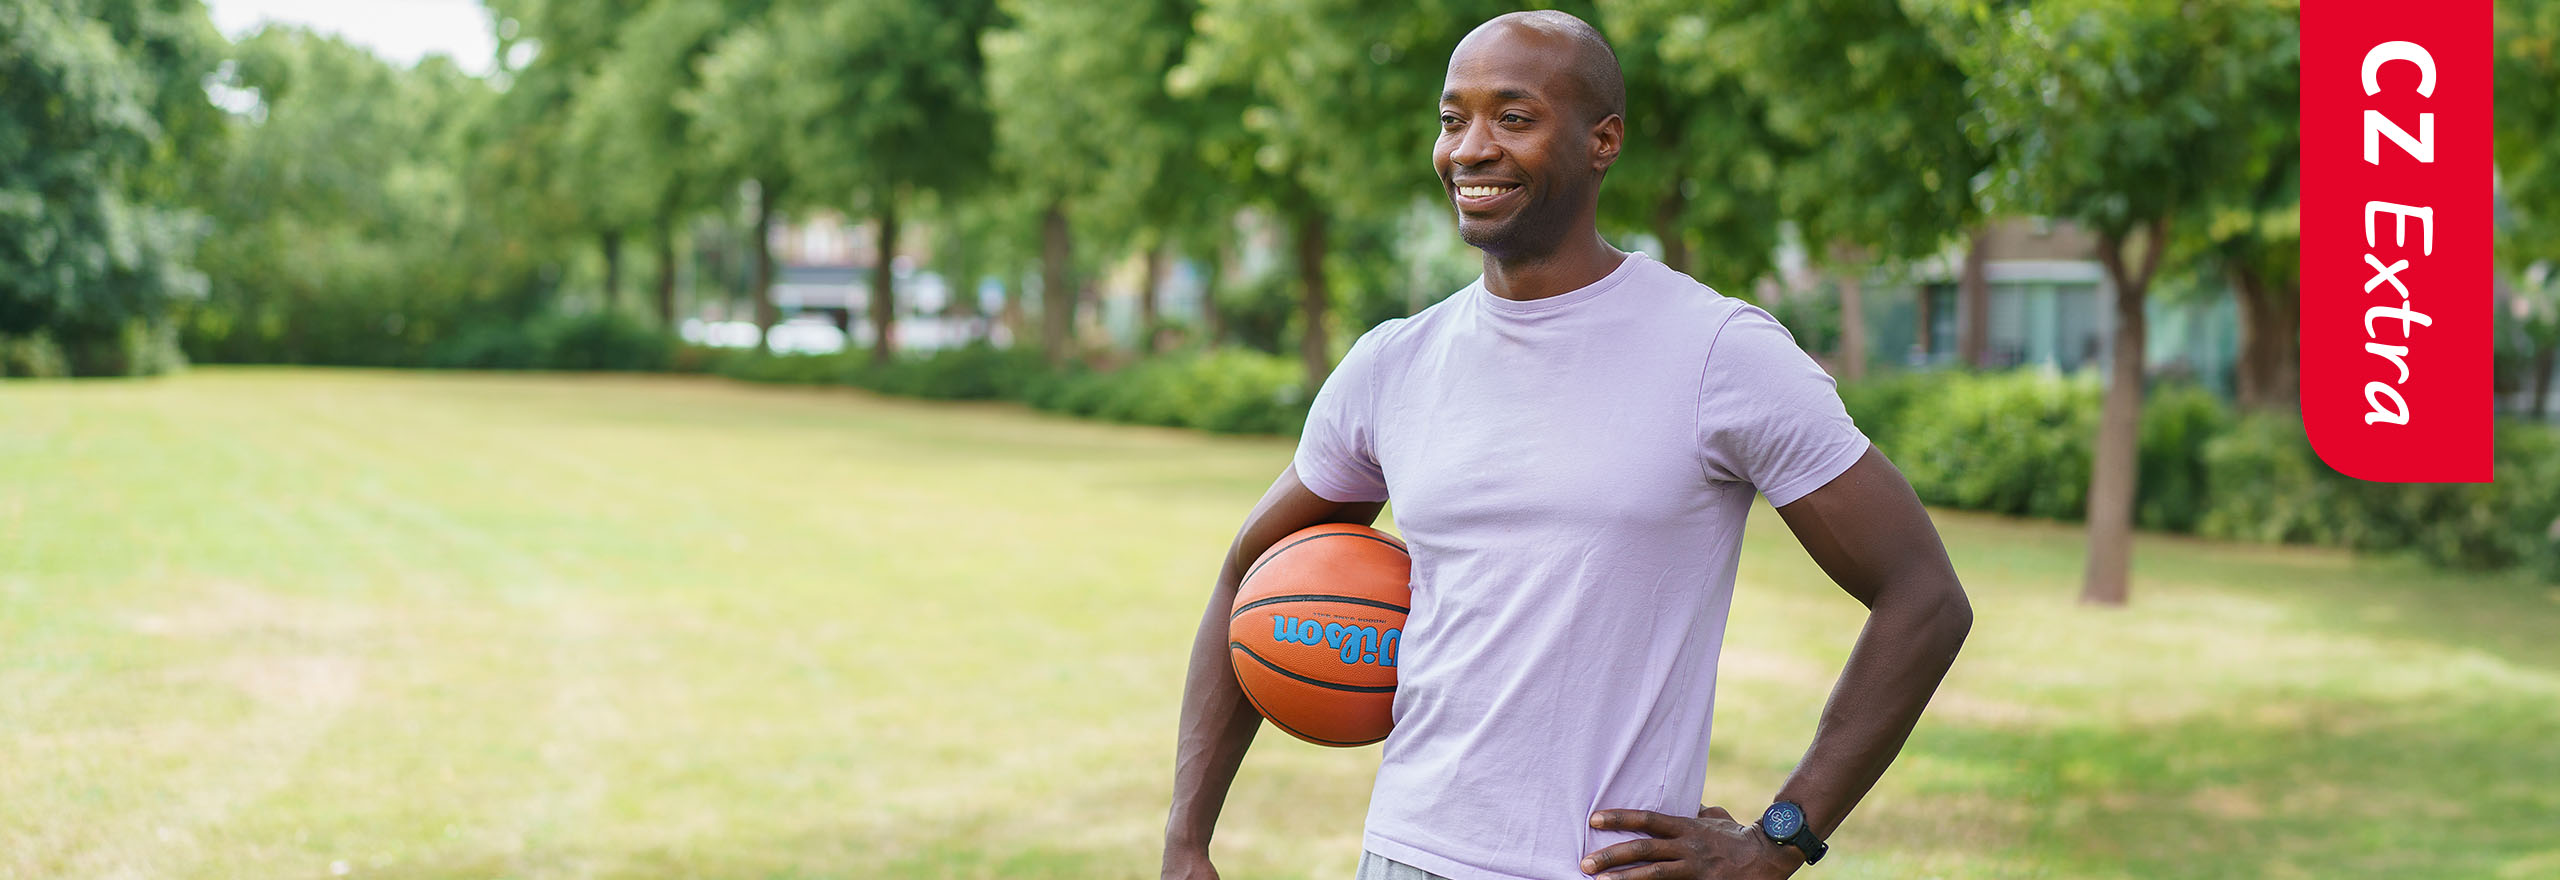 Man in het park met een basketbal